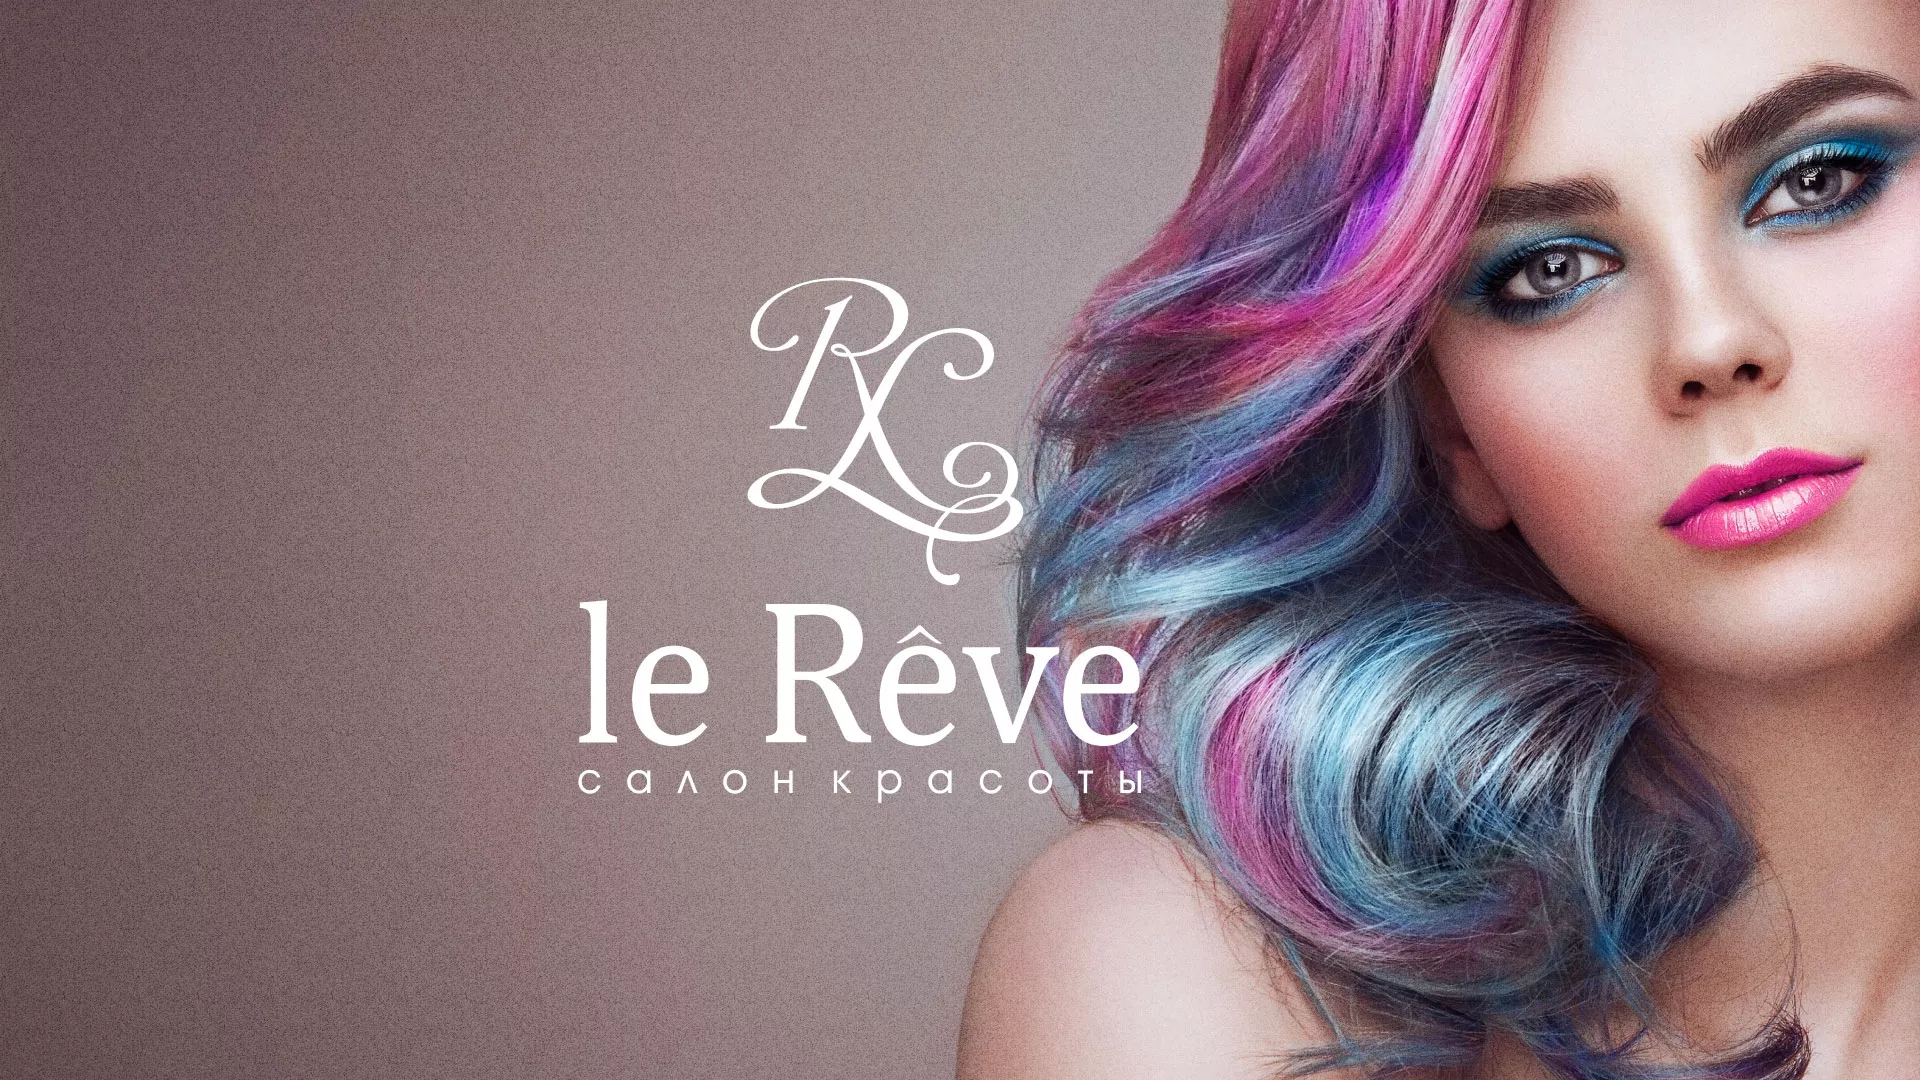 Создание сайта для салона красоты «Le Reve» в Златоусте